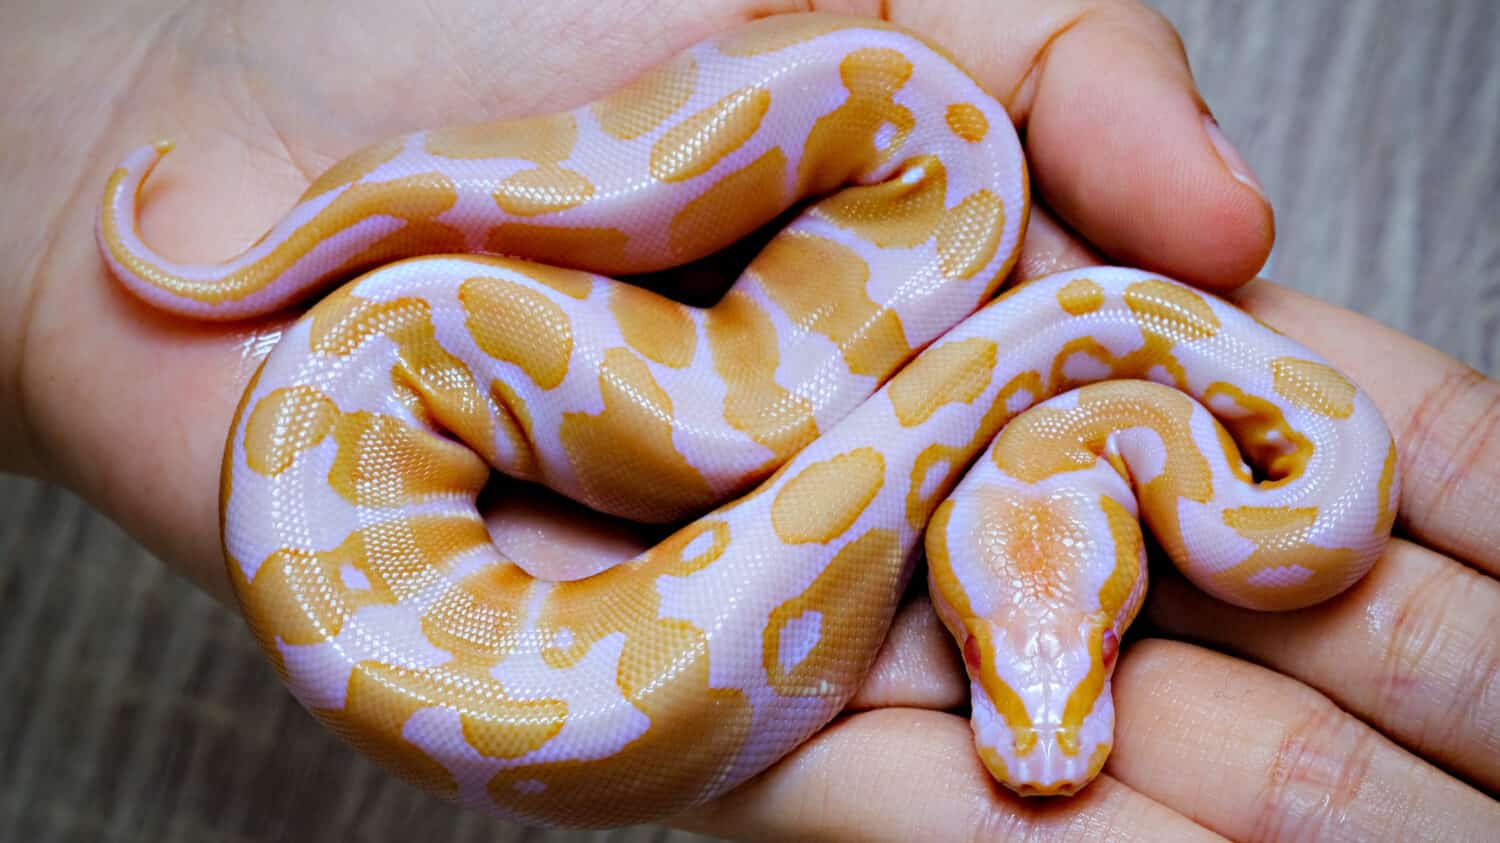 Pitone reale (Python regius), serpente per principianti e molto amato dai bambini, uova di serpente.